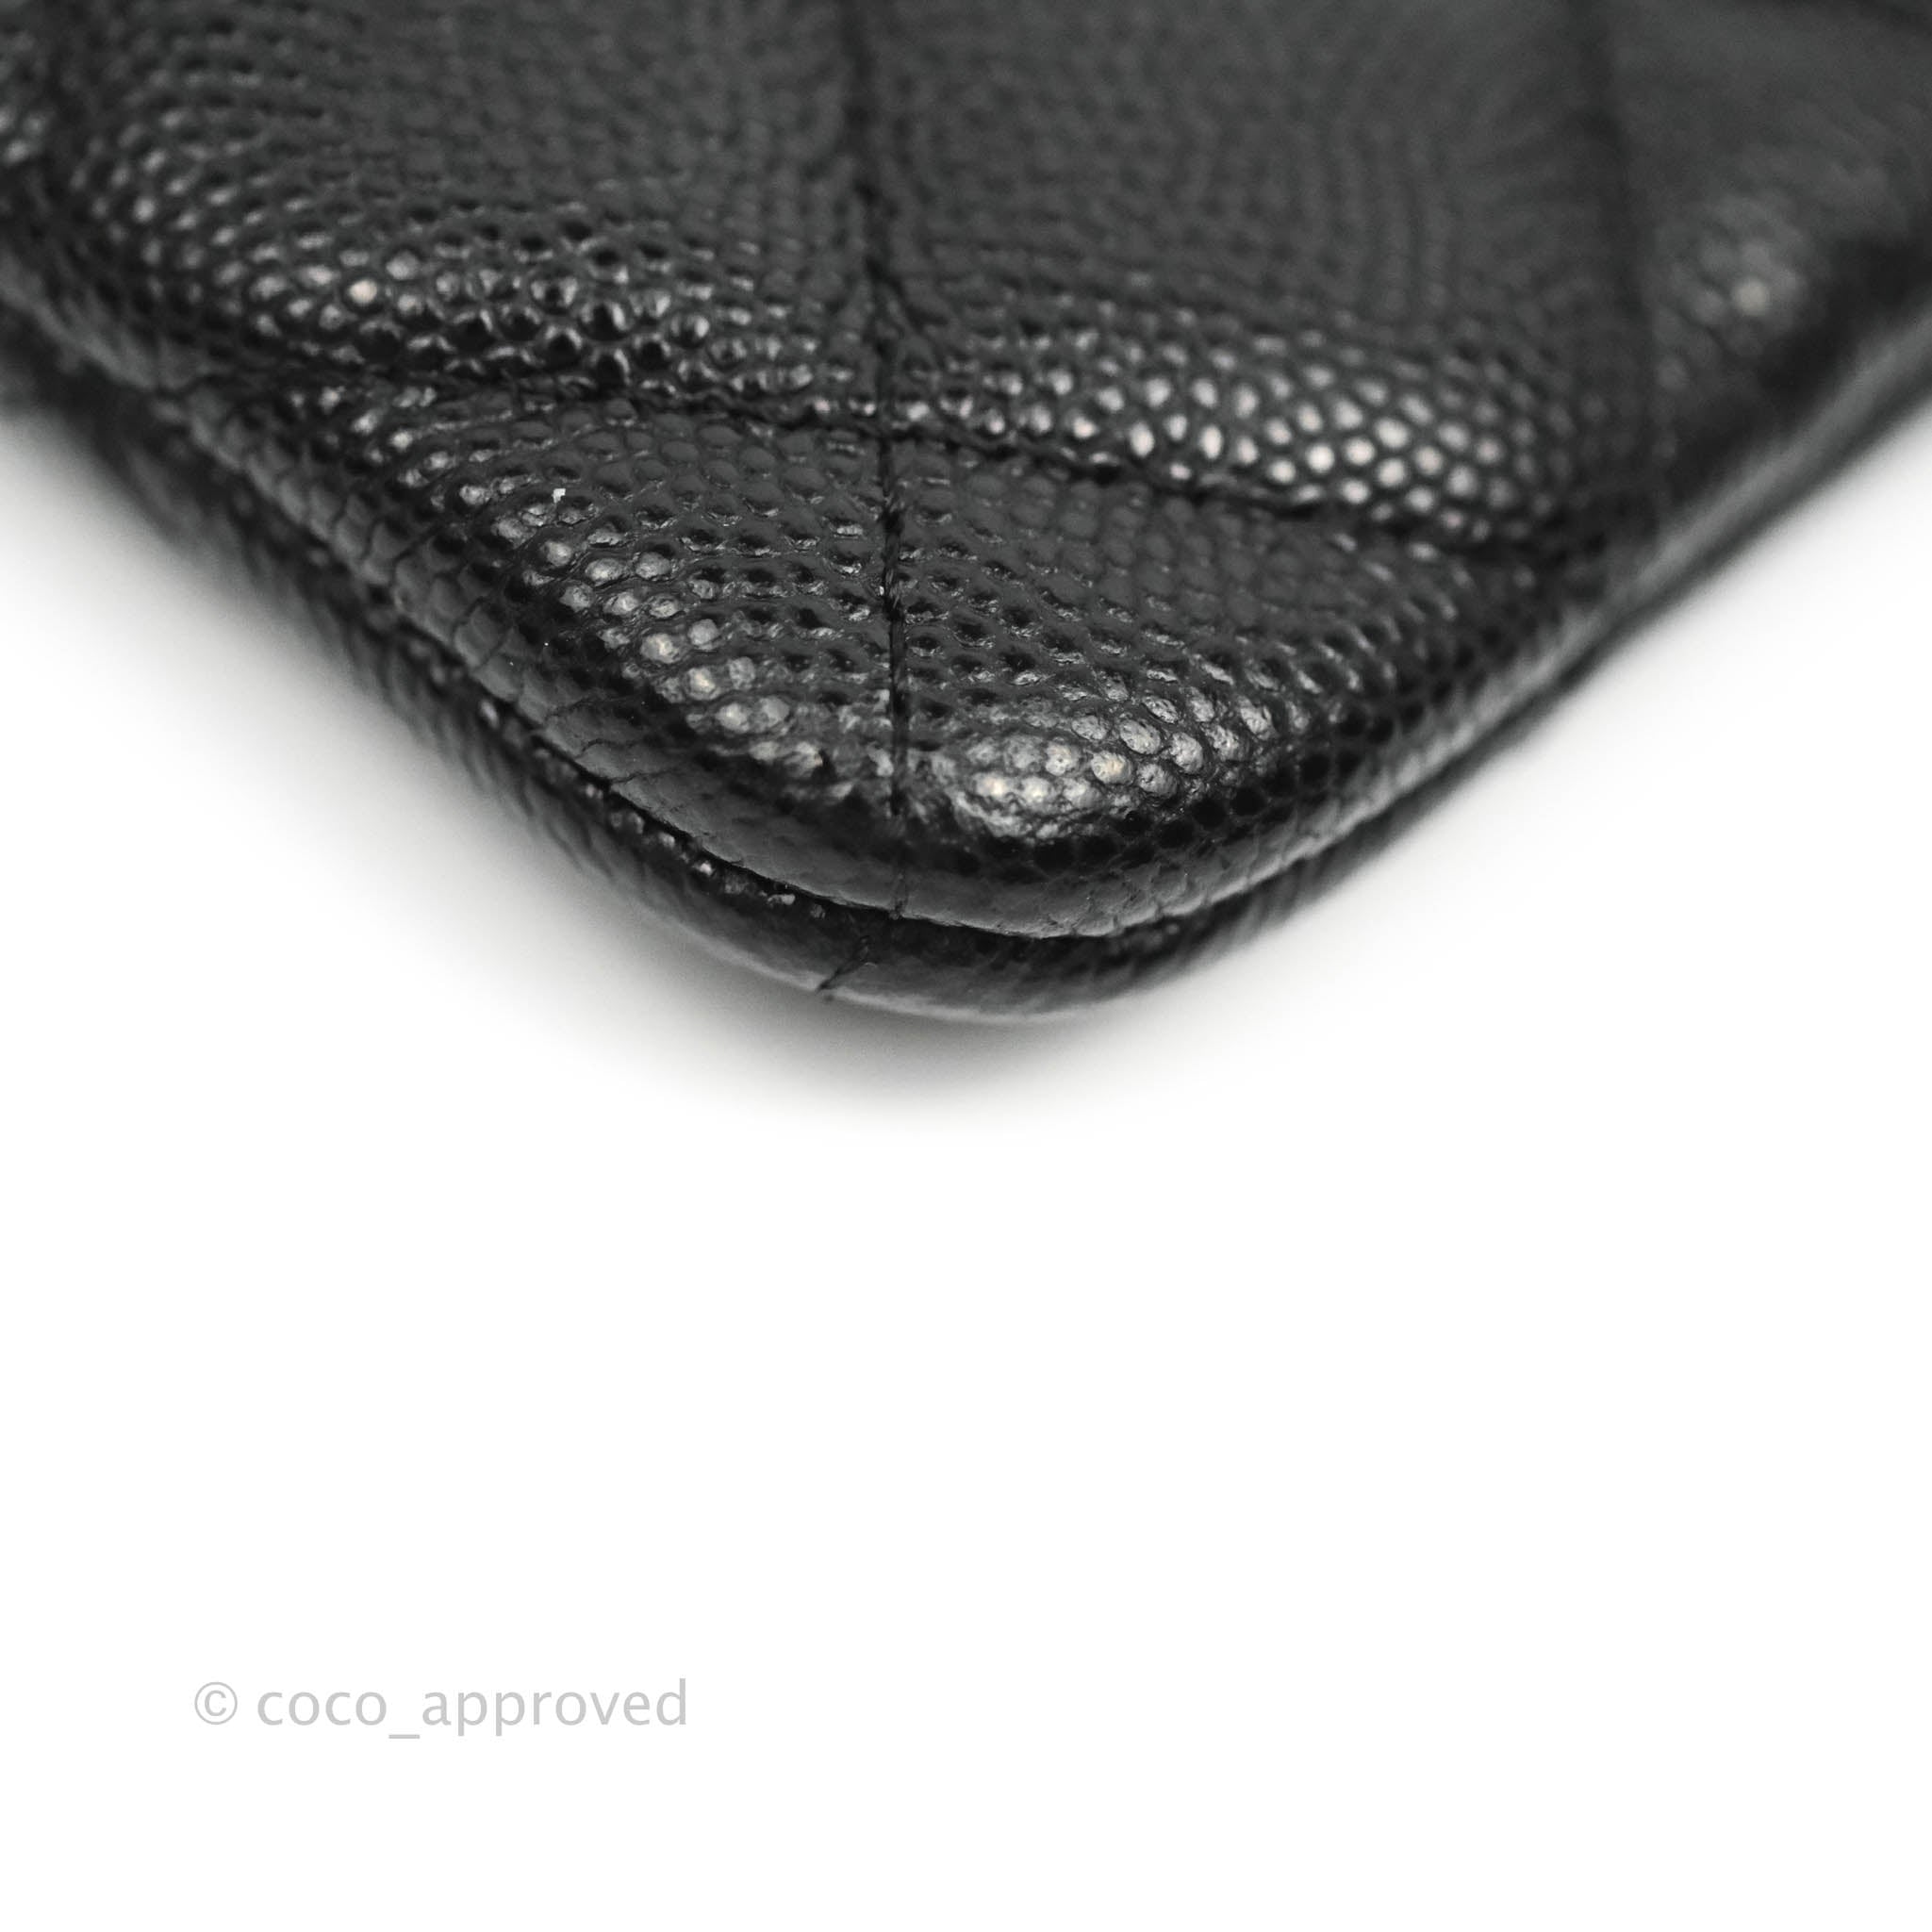 Chanel Mini Square Black Lambskin Gold Hardware – Coco Approved Studio